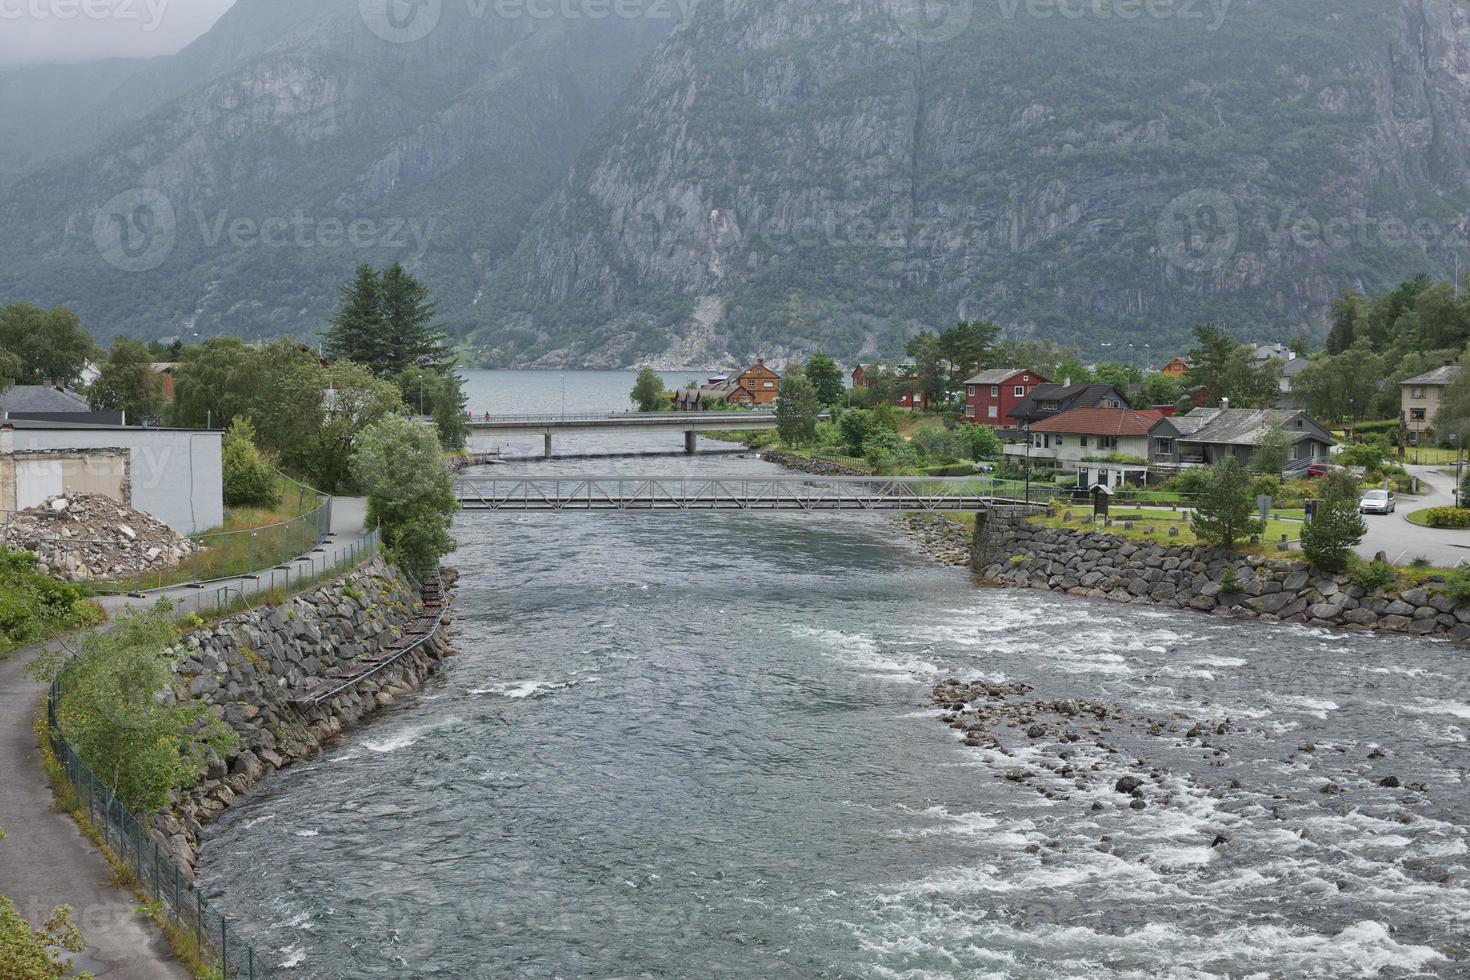 il villaggio di eidfjord in norvegia foto